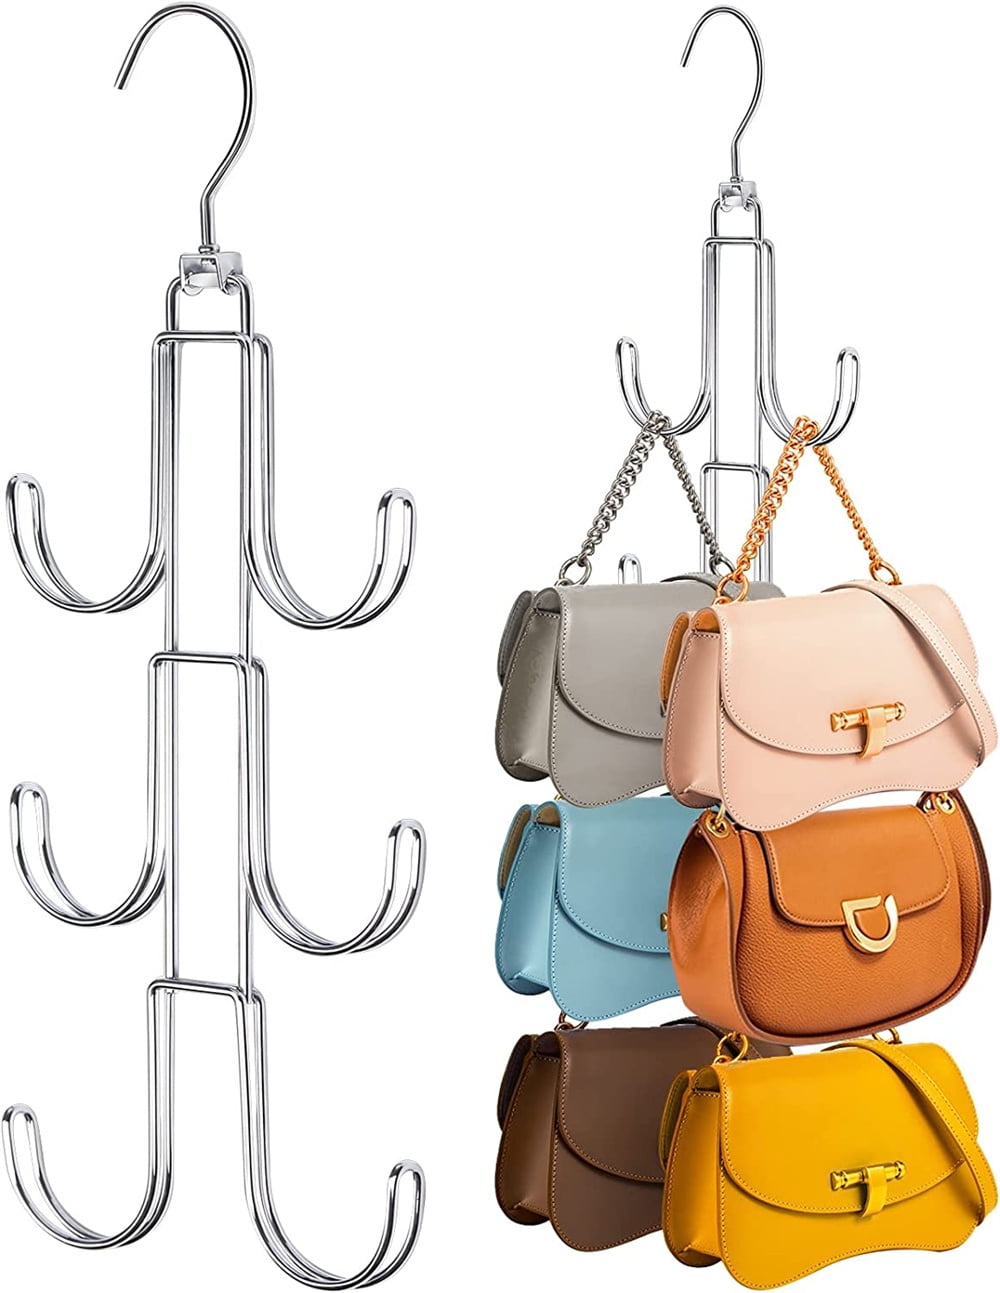 Purse Hanger Arched Hook PP Bag Hanger Handbag Tote Bag Rack Holder Closet  Organizer Storage for Purses hat Scarf Belt Holder - AliExpress